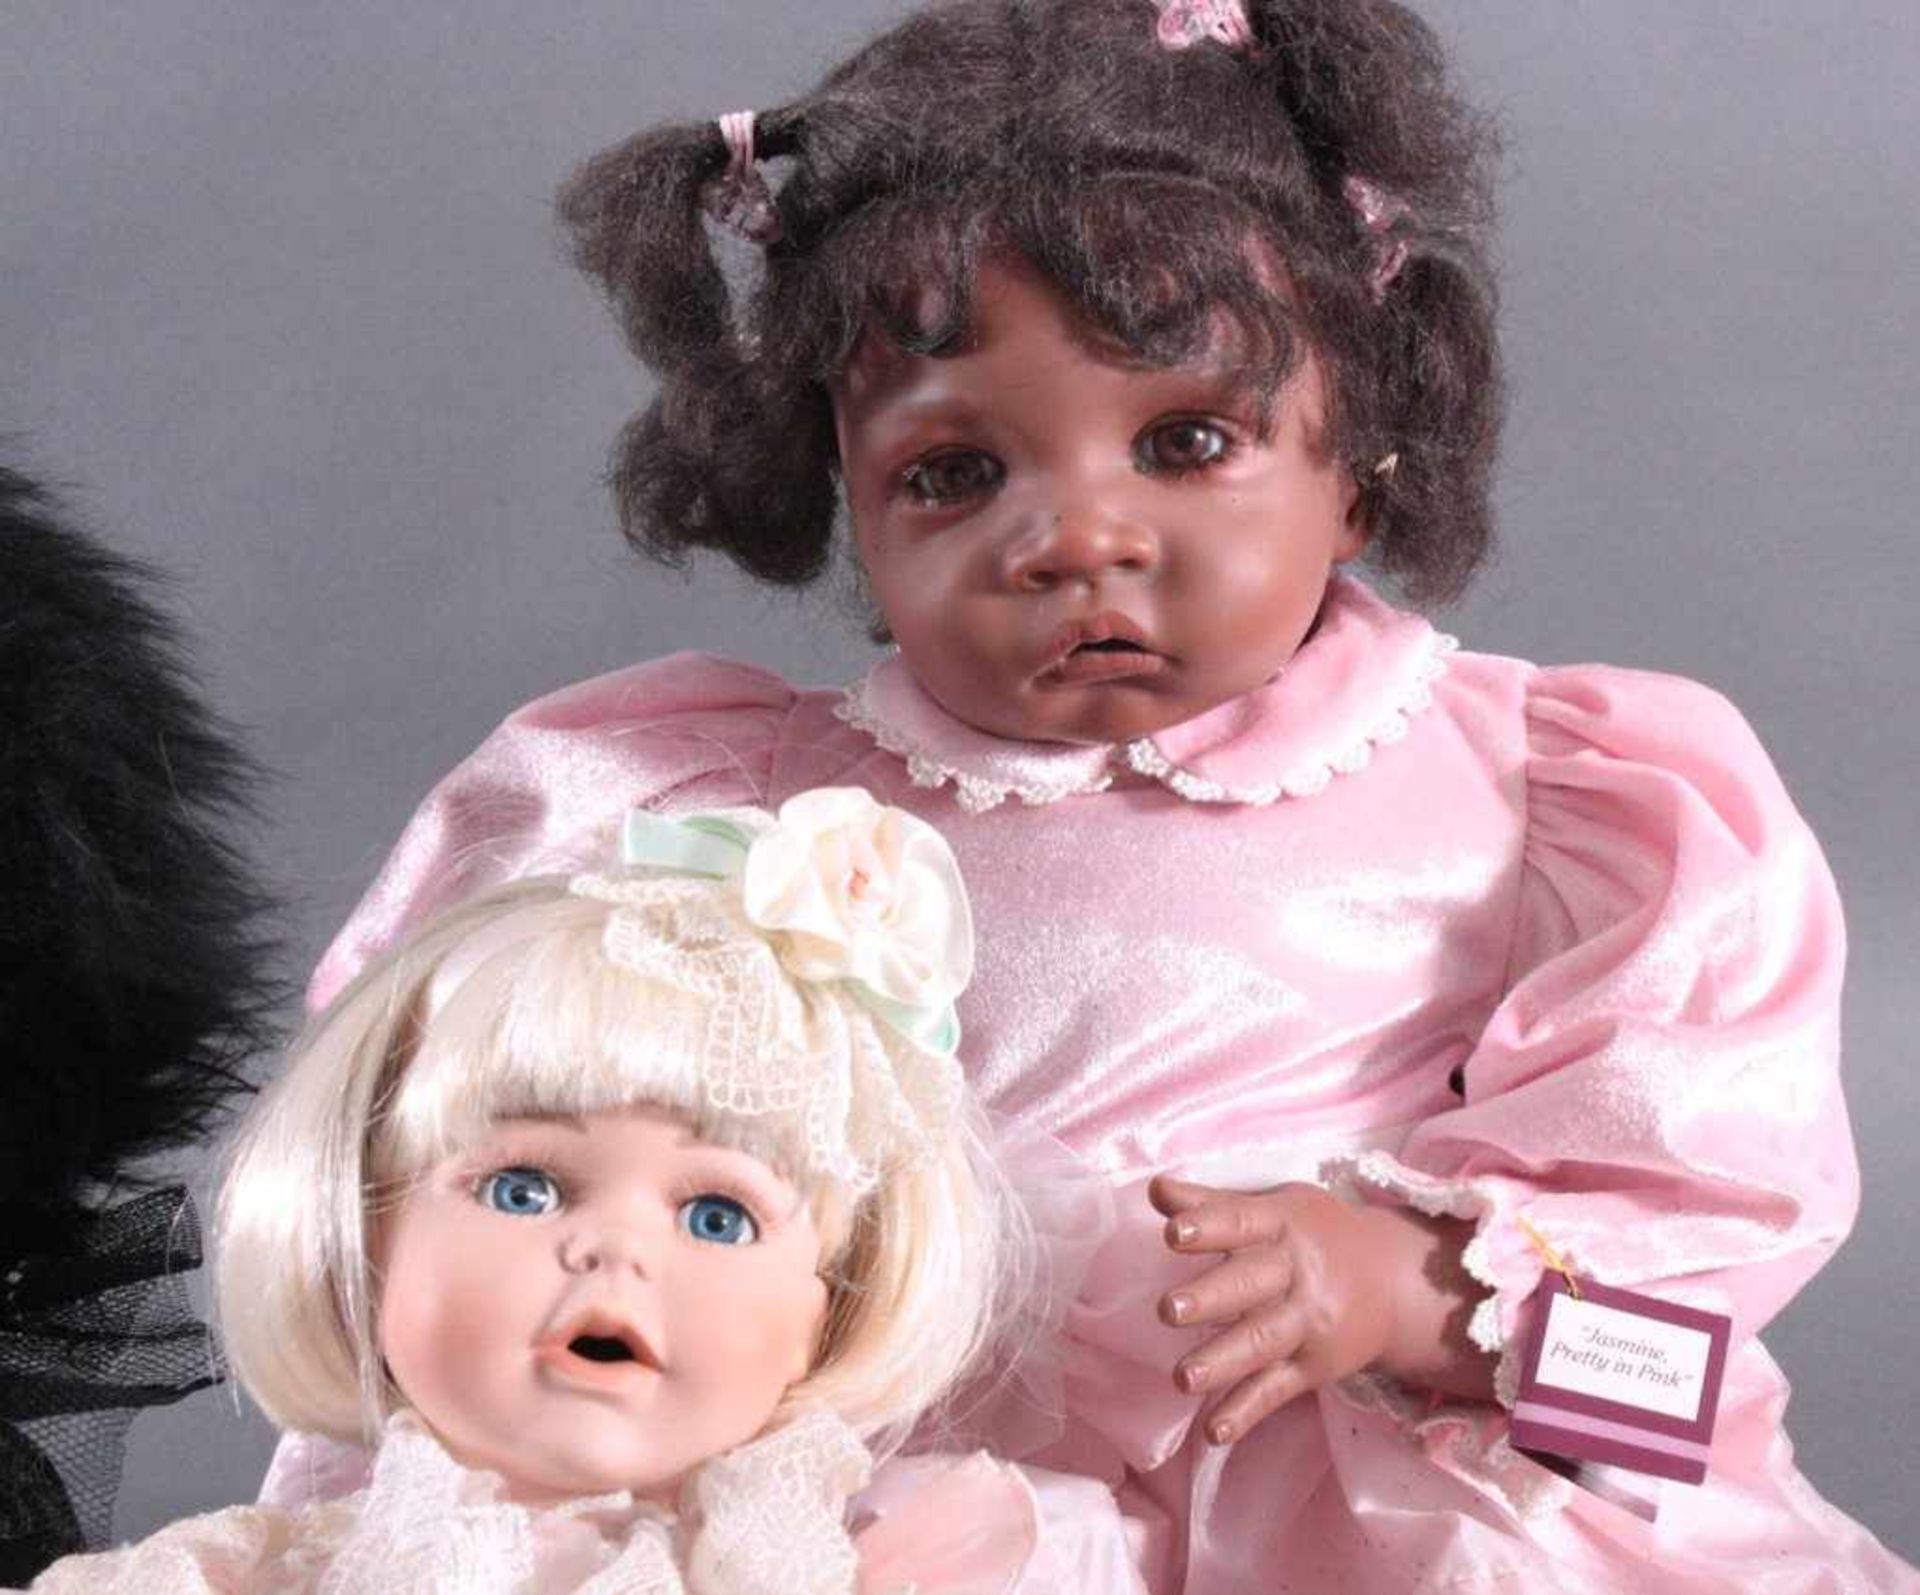 Konvolut Puppen5 Stück, Porzellankopf, -hände und -füße, Stoffkörper.1 "RF-Collection" Puppe, blonde - Bild 3 aus 3